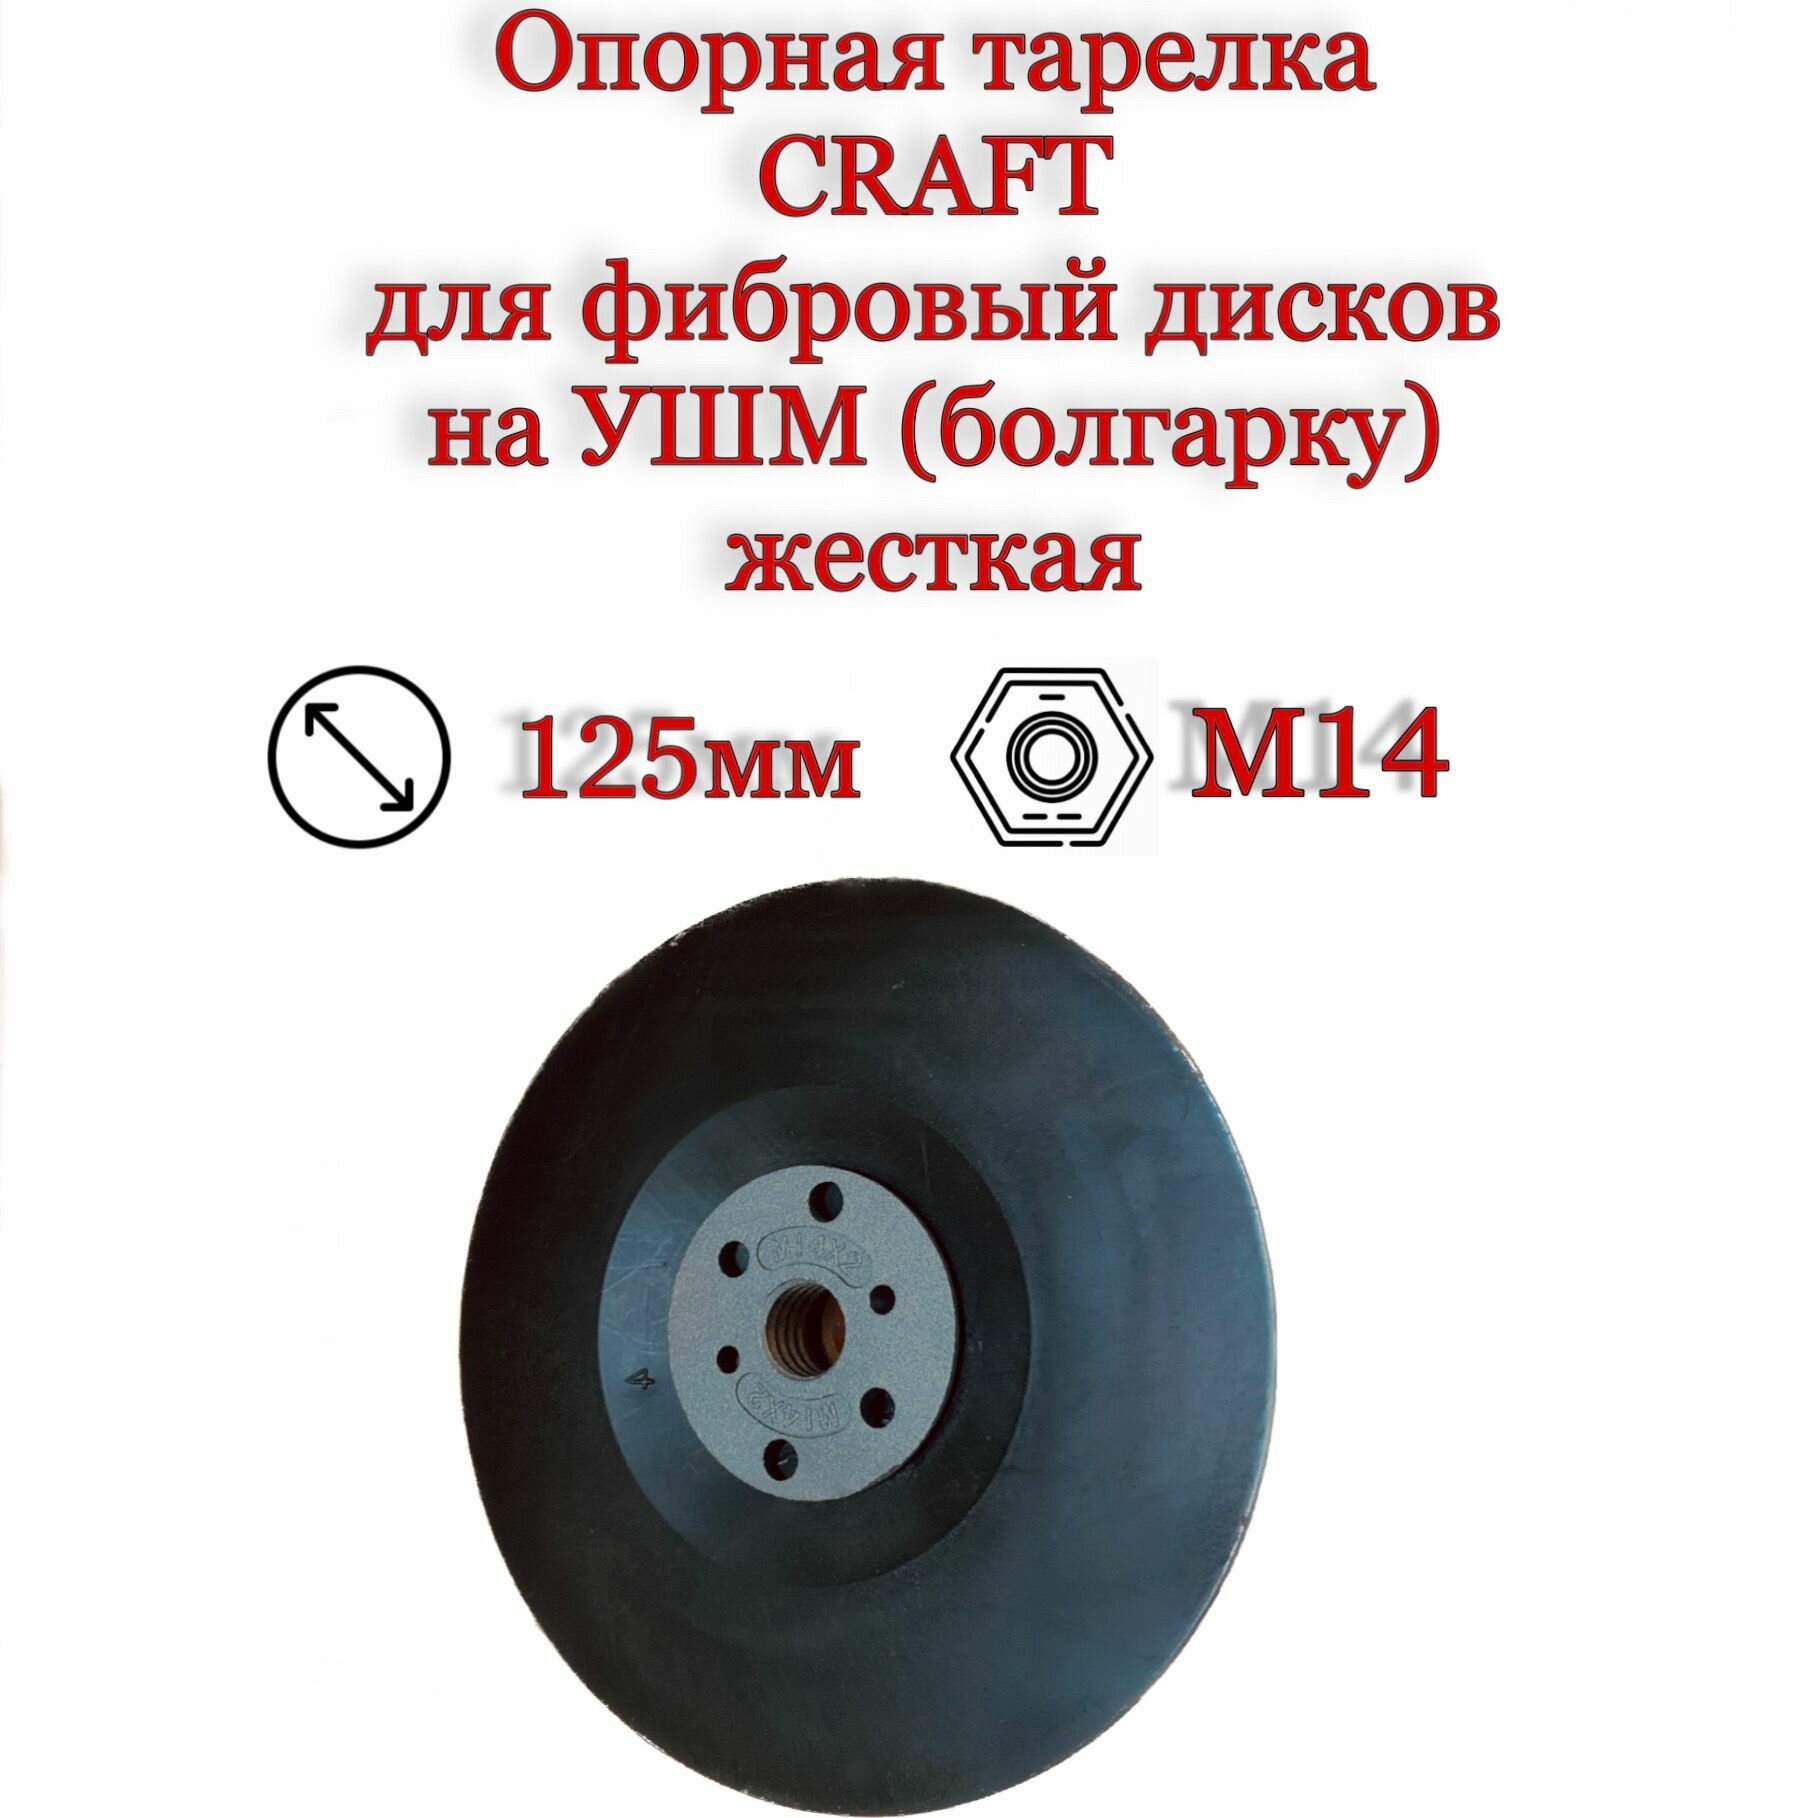 Опорная тарелка CRAFT для фибровых дисков 125 мм на УШМ (болгарку) жесткая резьба М14